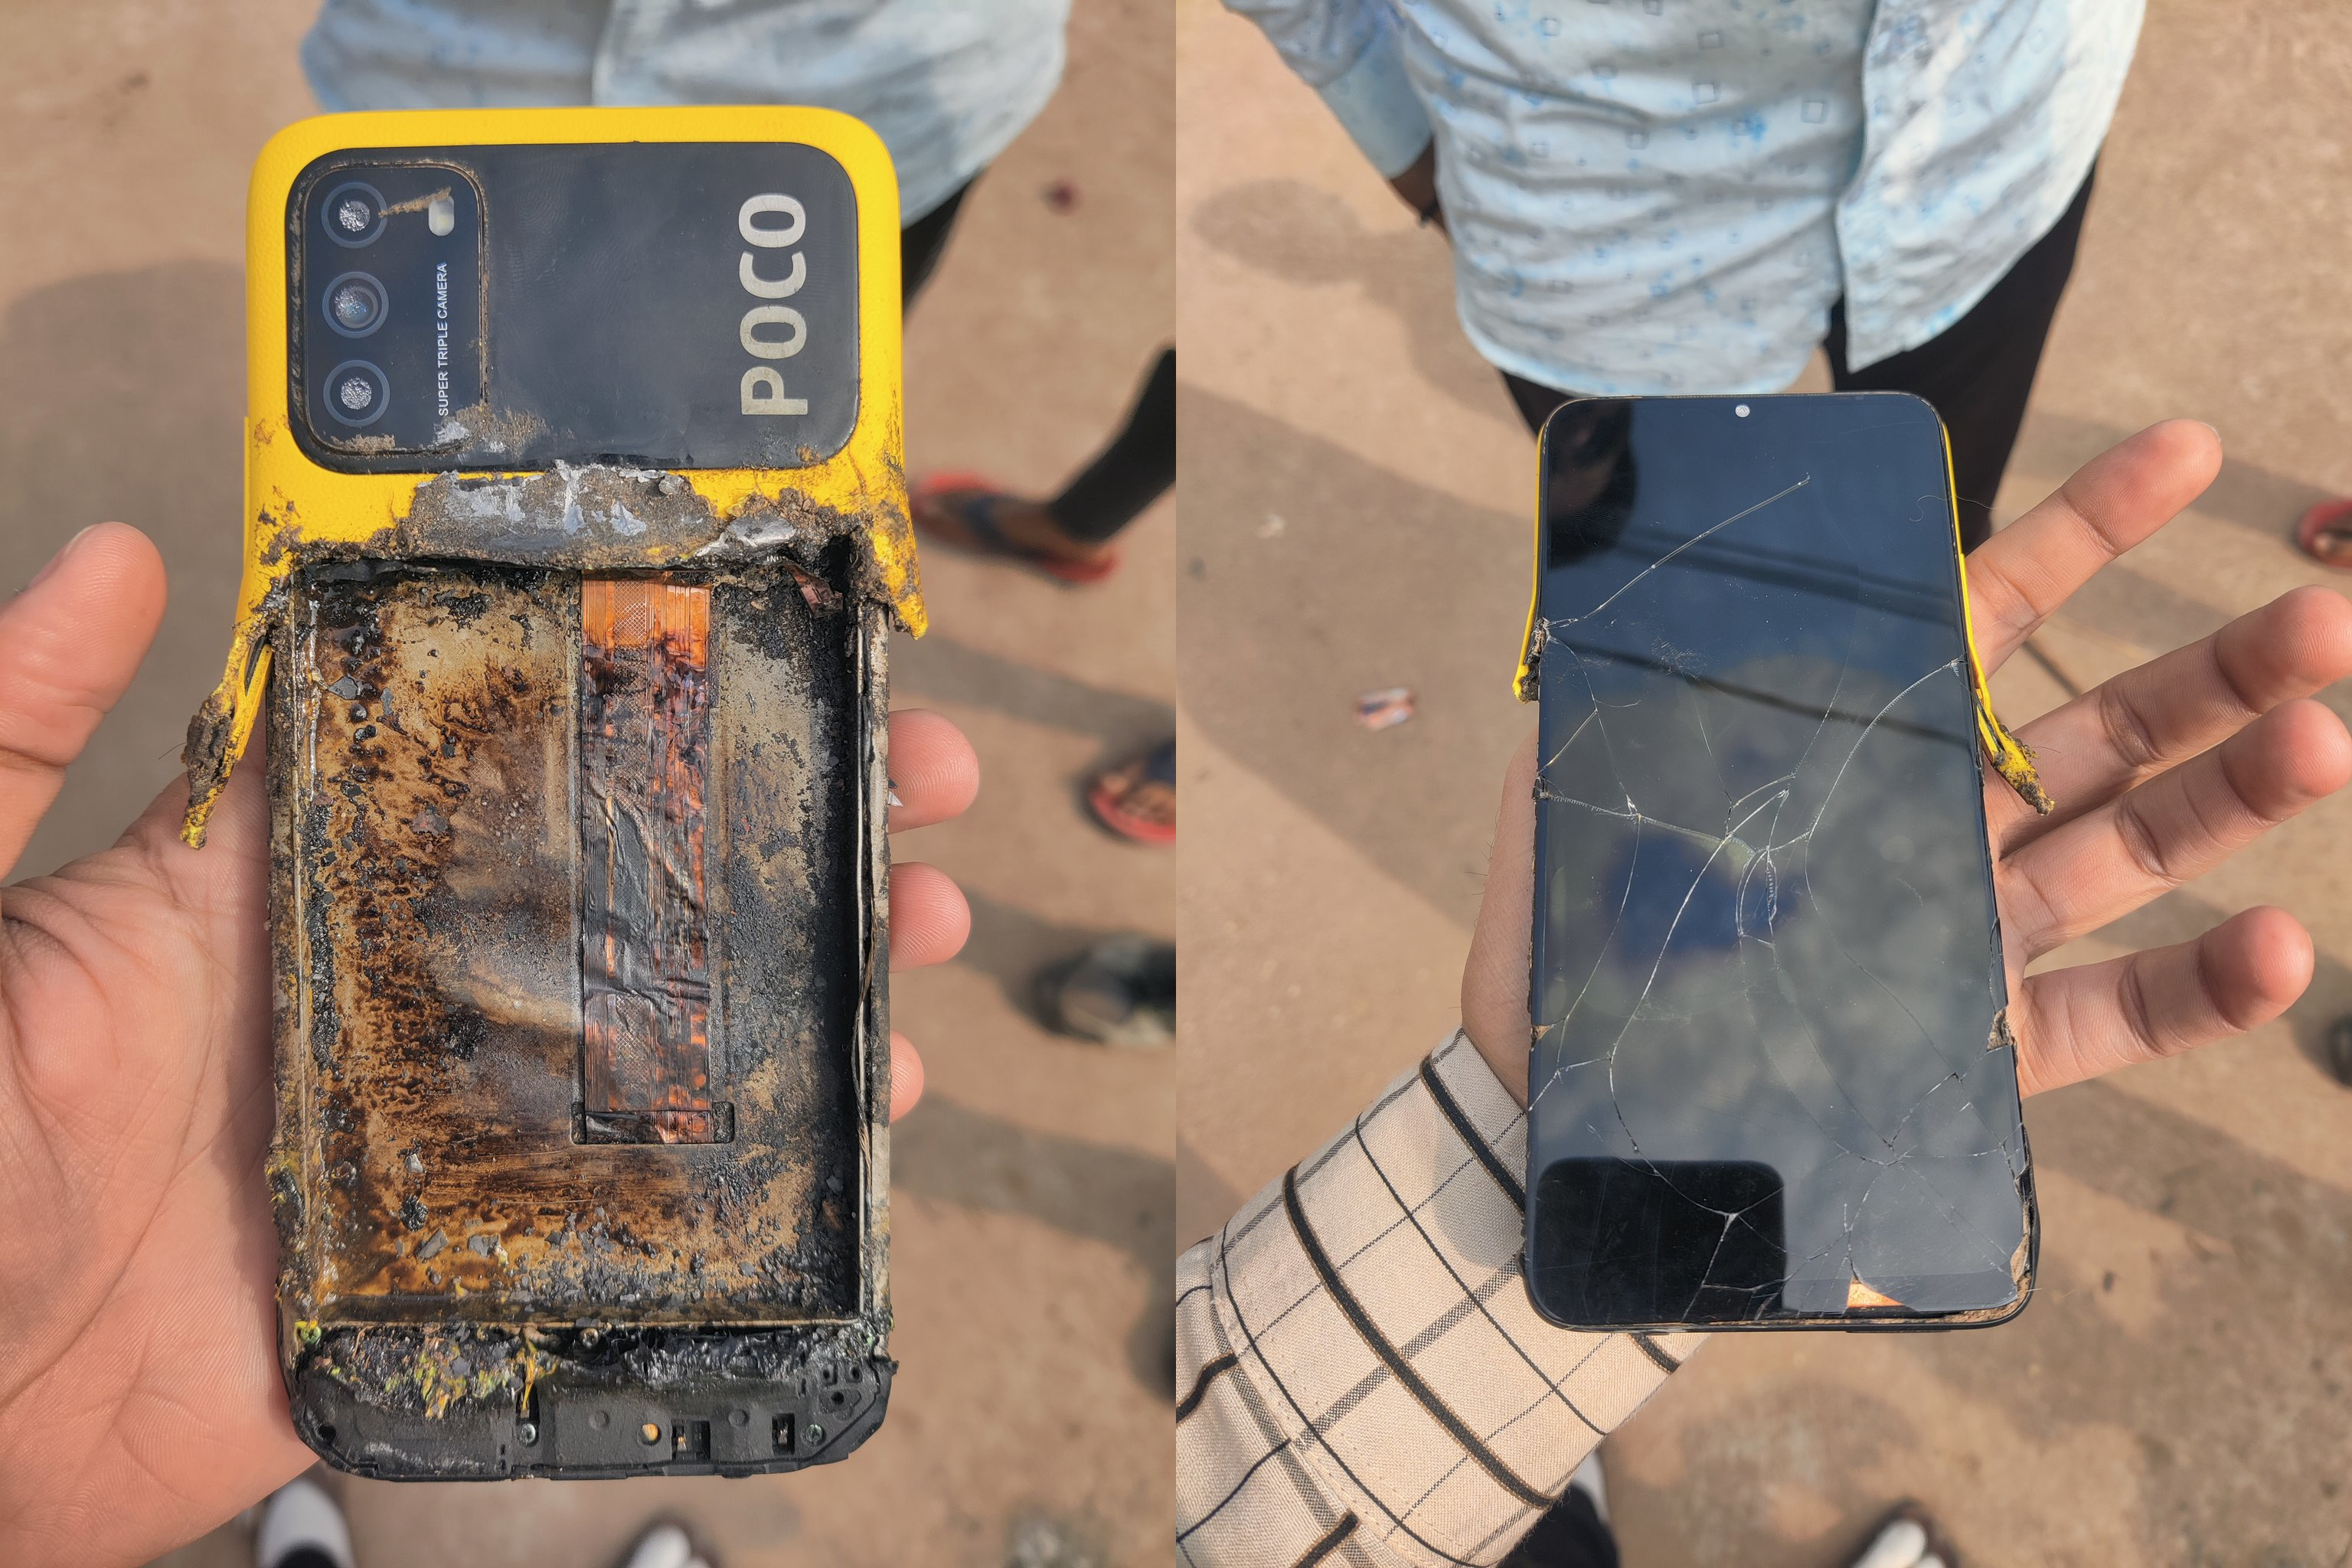 "C'est le pire test de service et de qualité": un autre smartphone de sous-marque Xiaomi - Poco M3 - a explosé